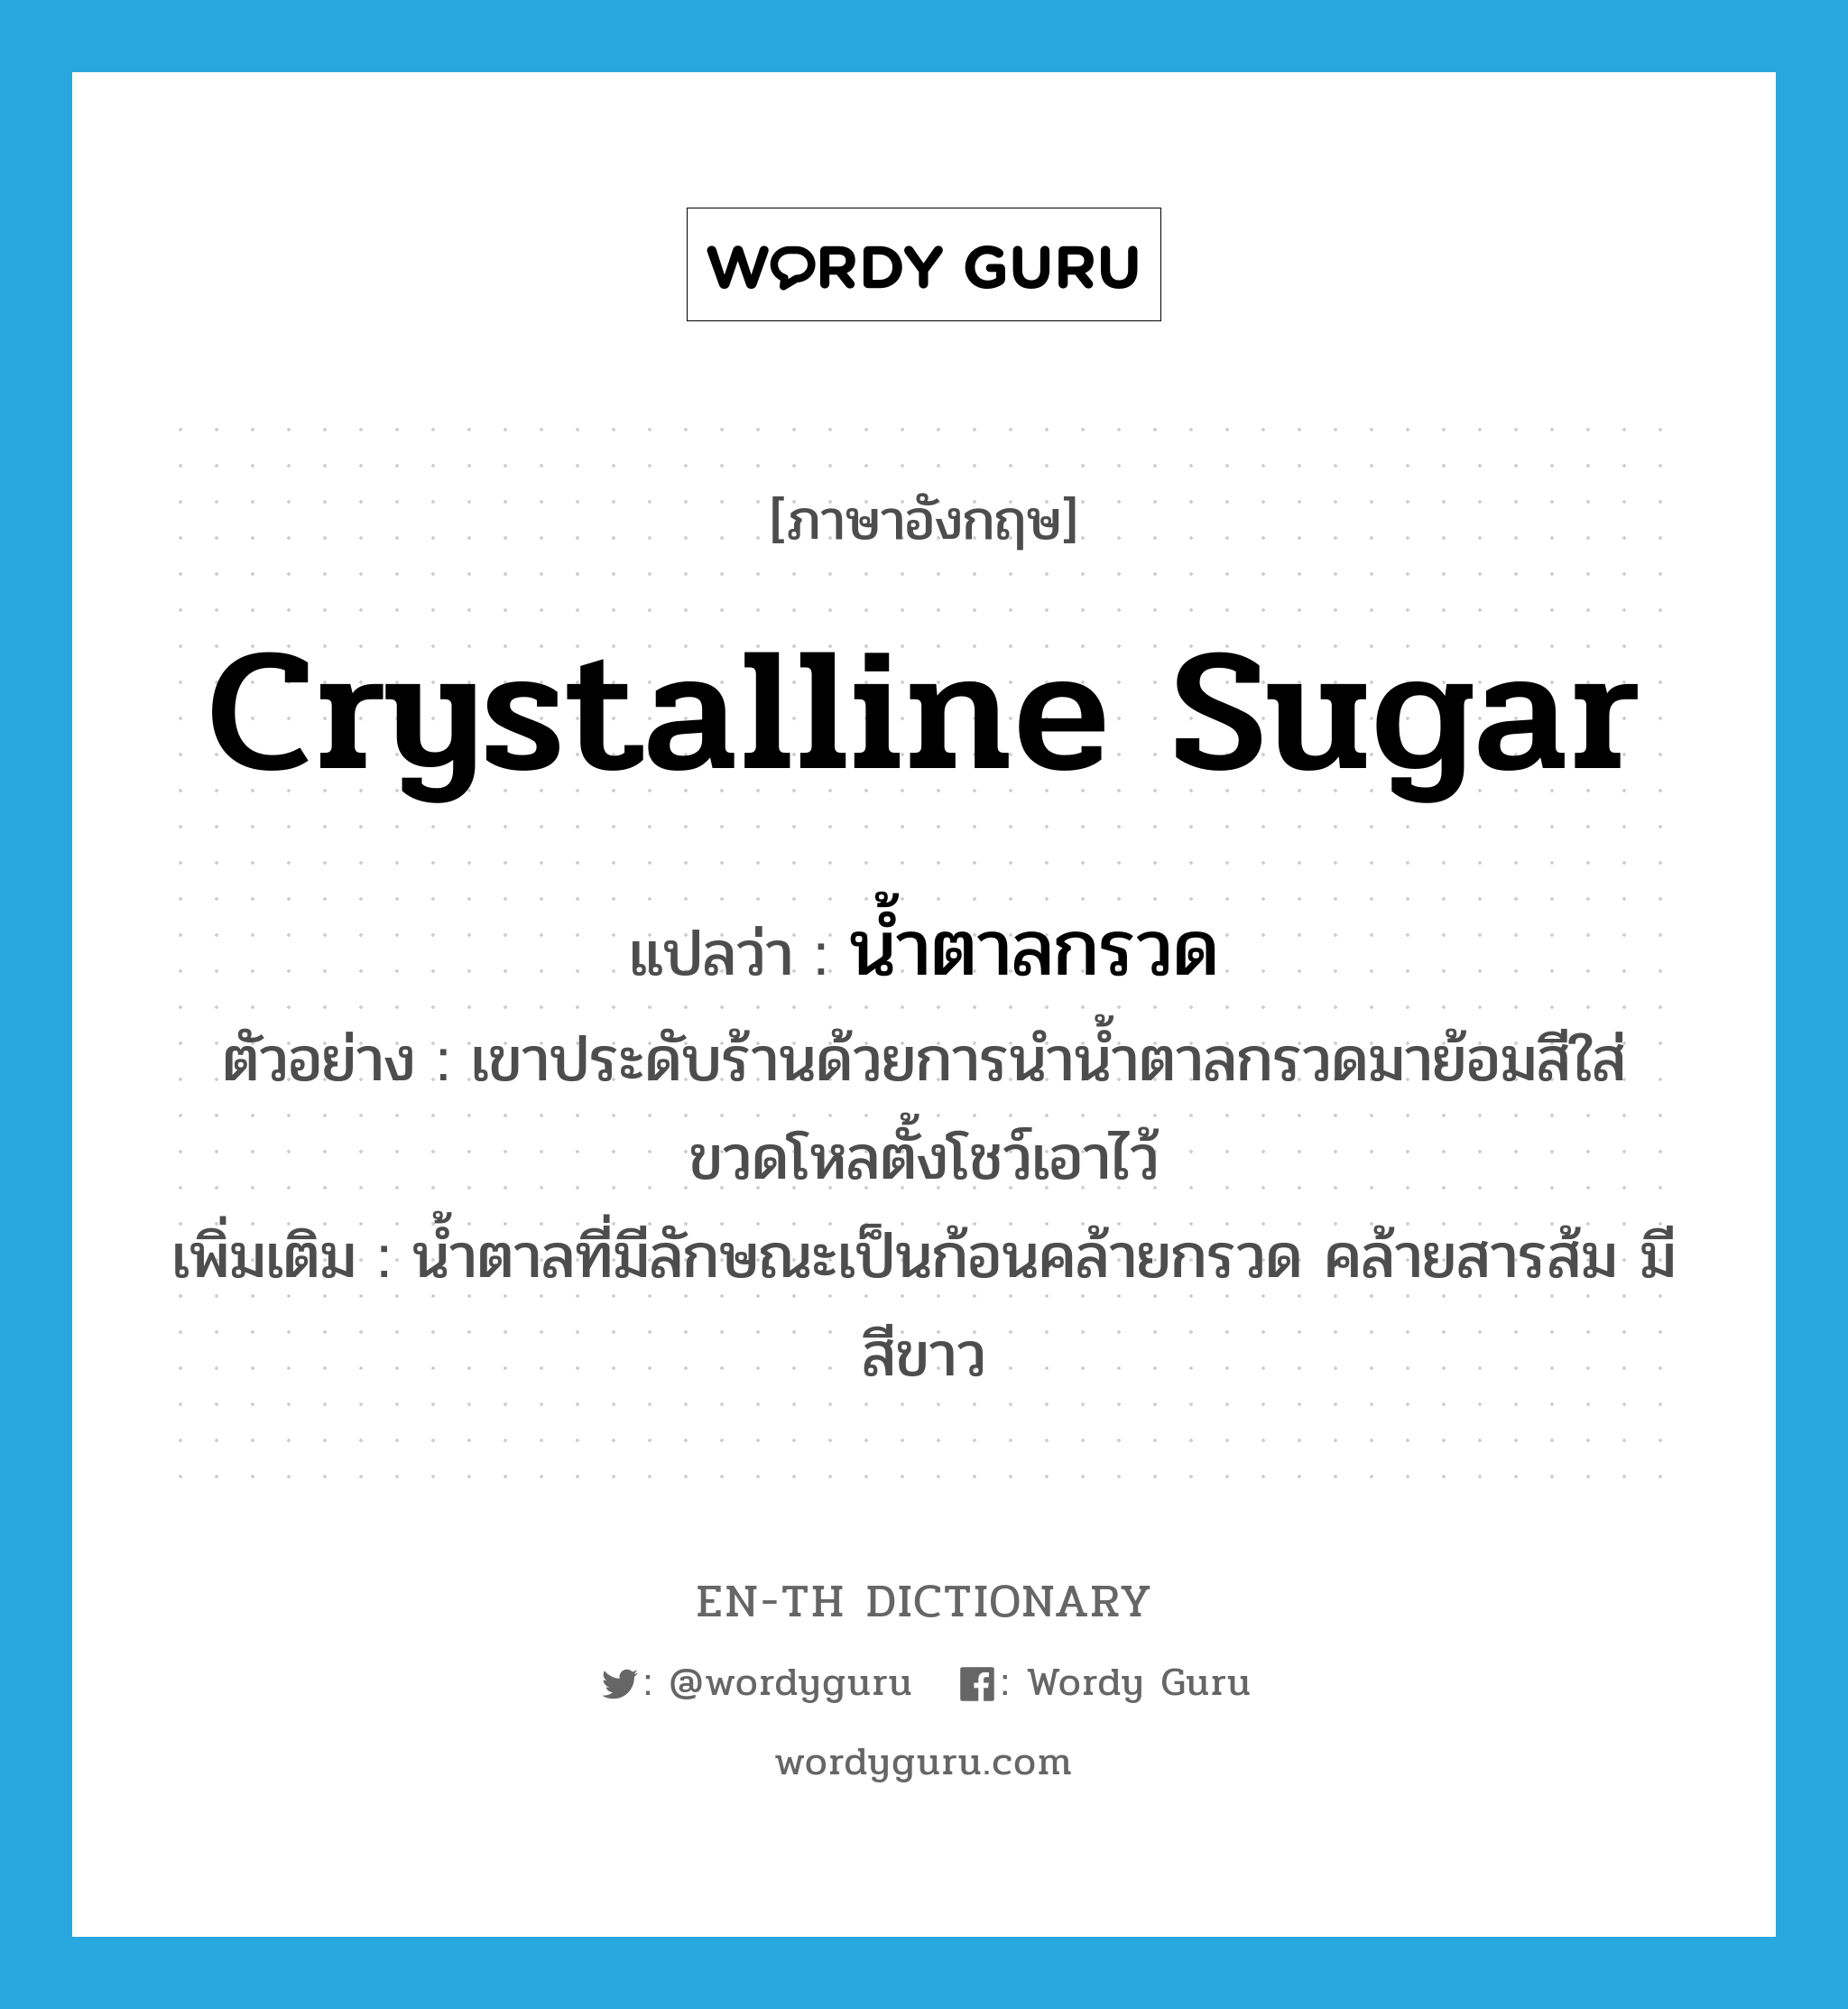 crystalline sugar แปลว่า?, คำศัพท์ภาษาอังกฤษ crystalline sugar แปลว่า น้ำตาลกรวด ประเภท N ตัวอย่าง เขาประดับร้านด้วยการนำน้ำตาลกรวดมาย้อมสีใส่ขวดโหลตั้งโชว์เอาไว้ เพิ่มเติม น้ำตาลที่มีลักษณะเป็นก้อนคล้ายกรวด คล้ายสารส้ม มีสีขาว หมวด N